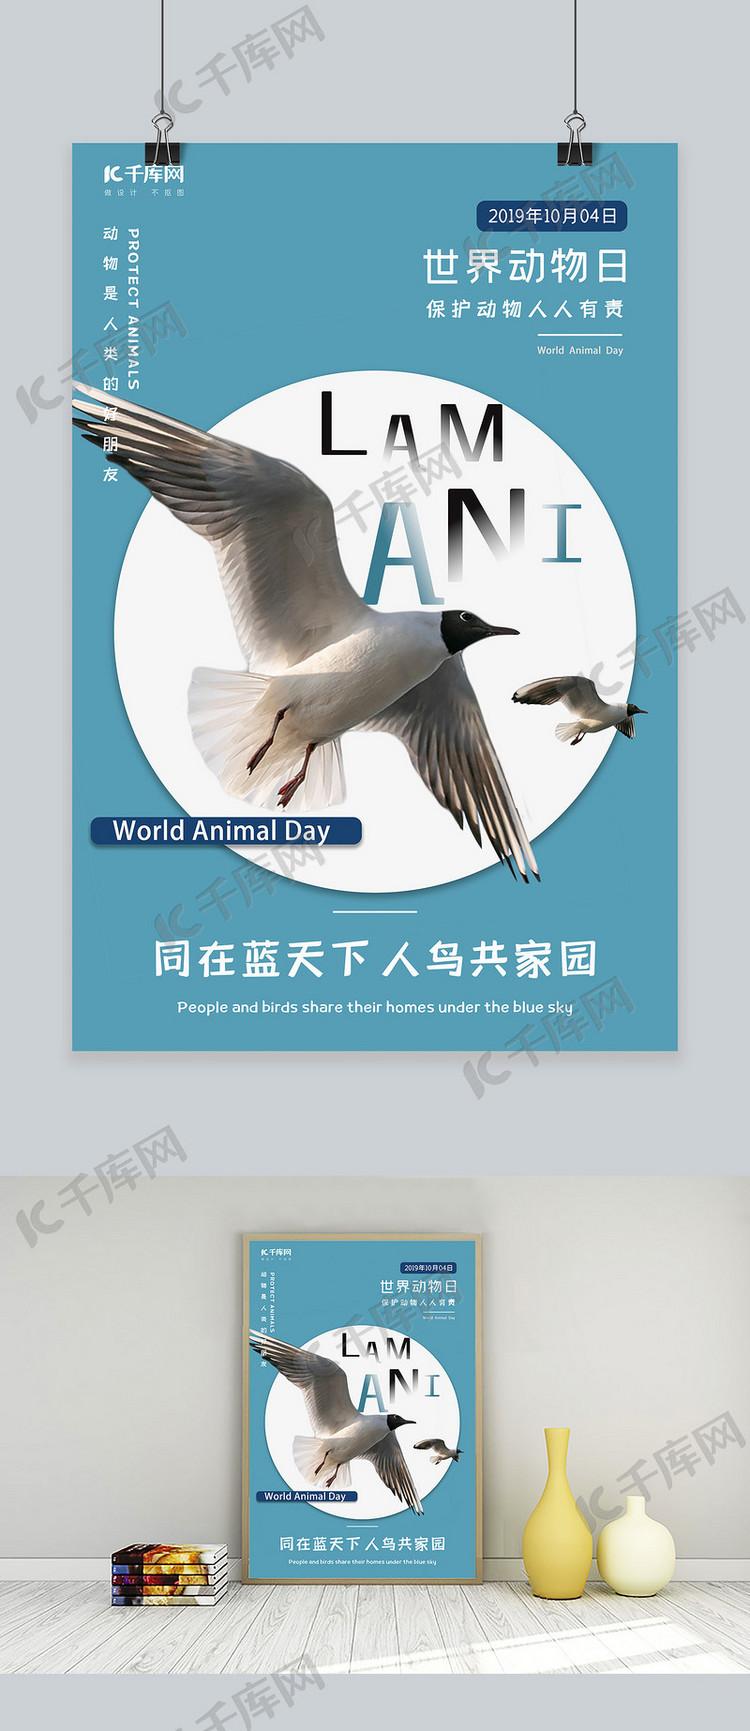 世界动物日公益宣传海报